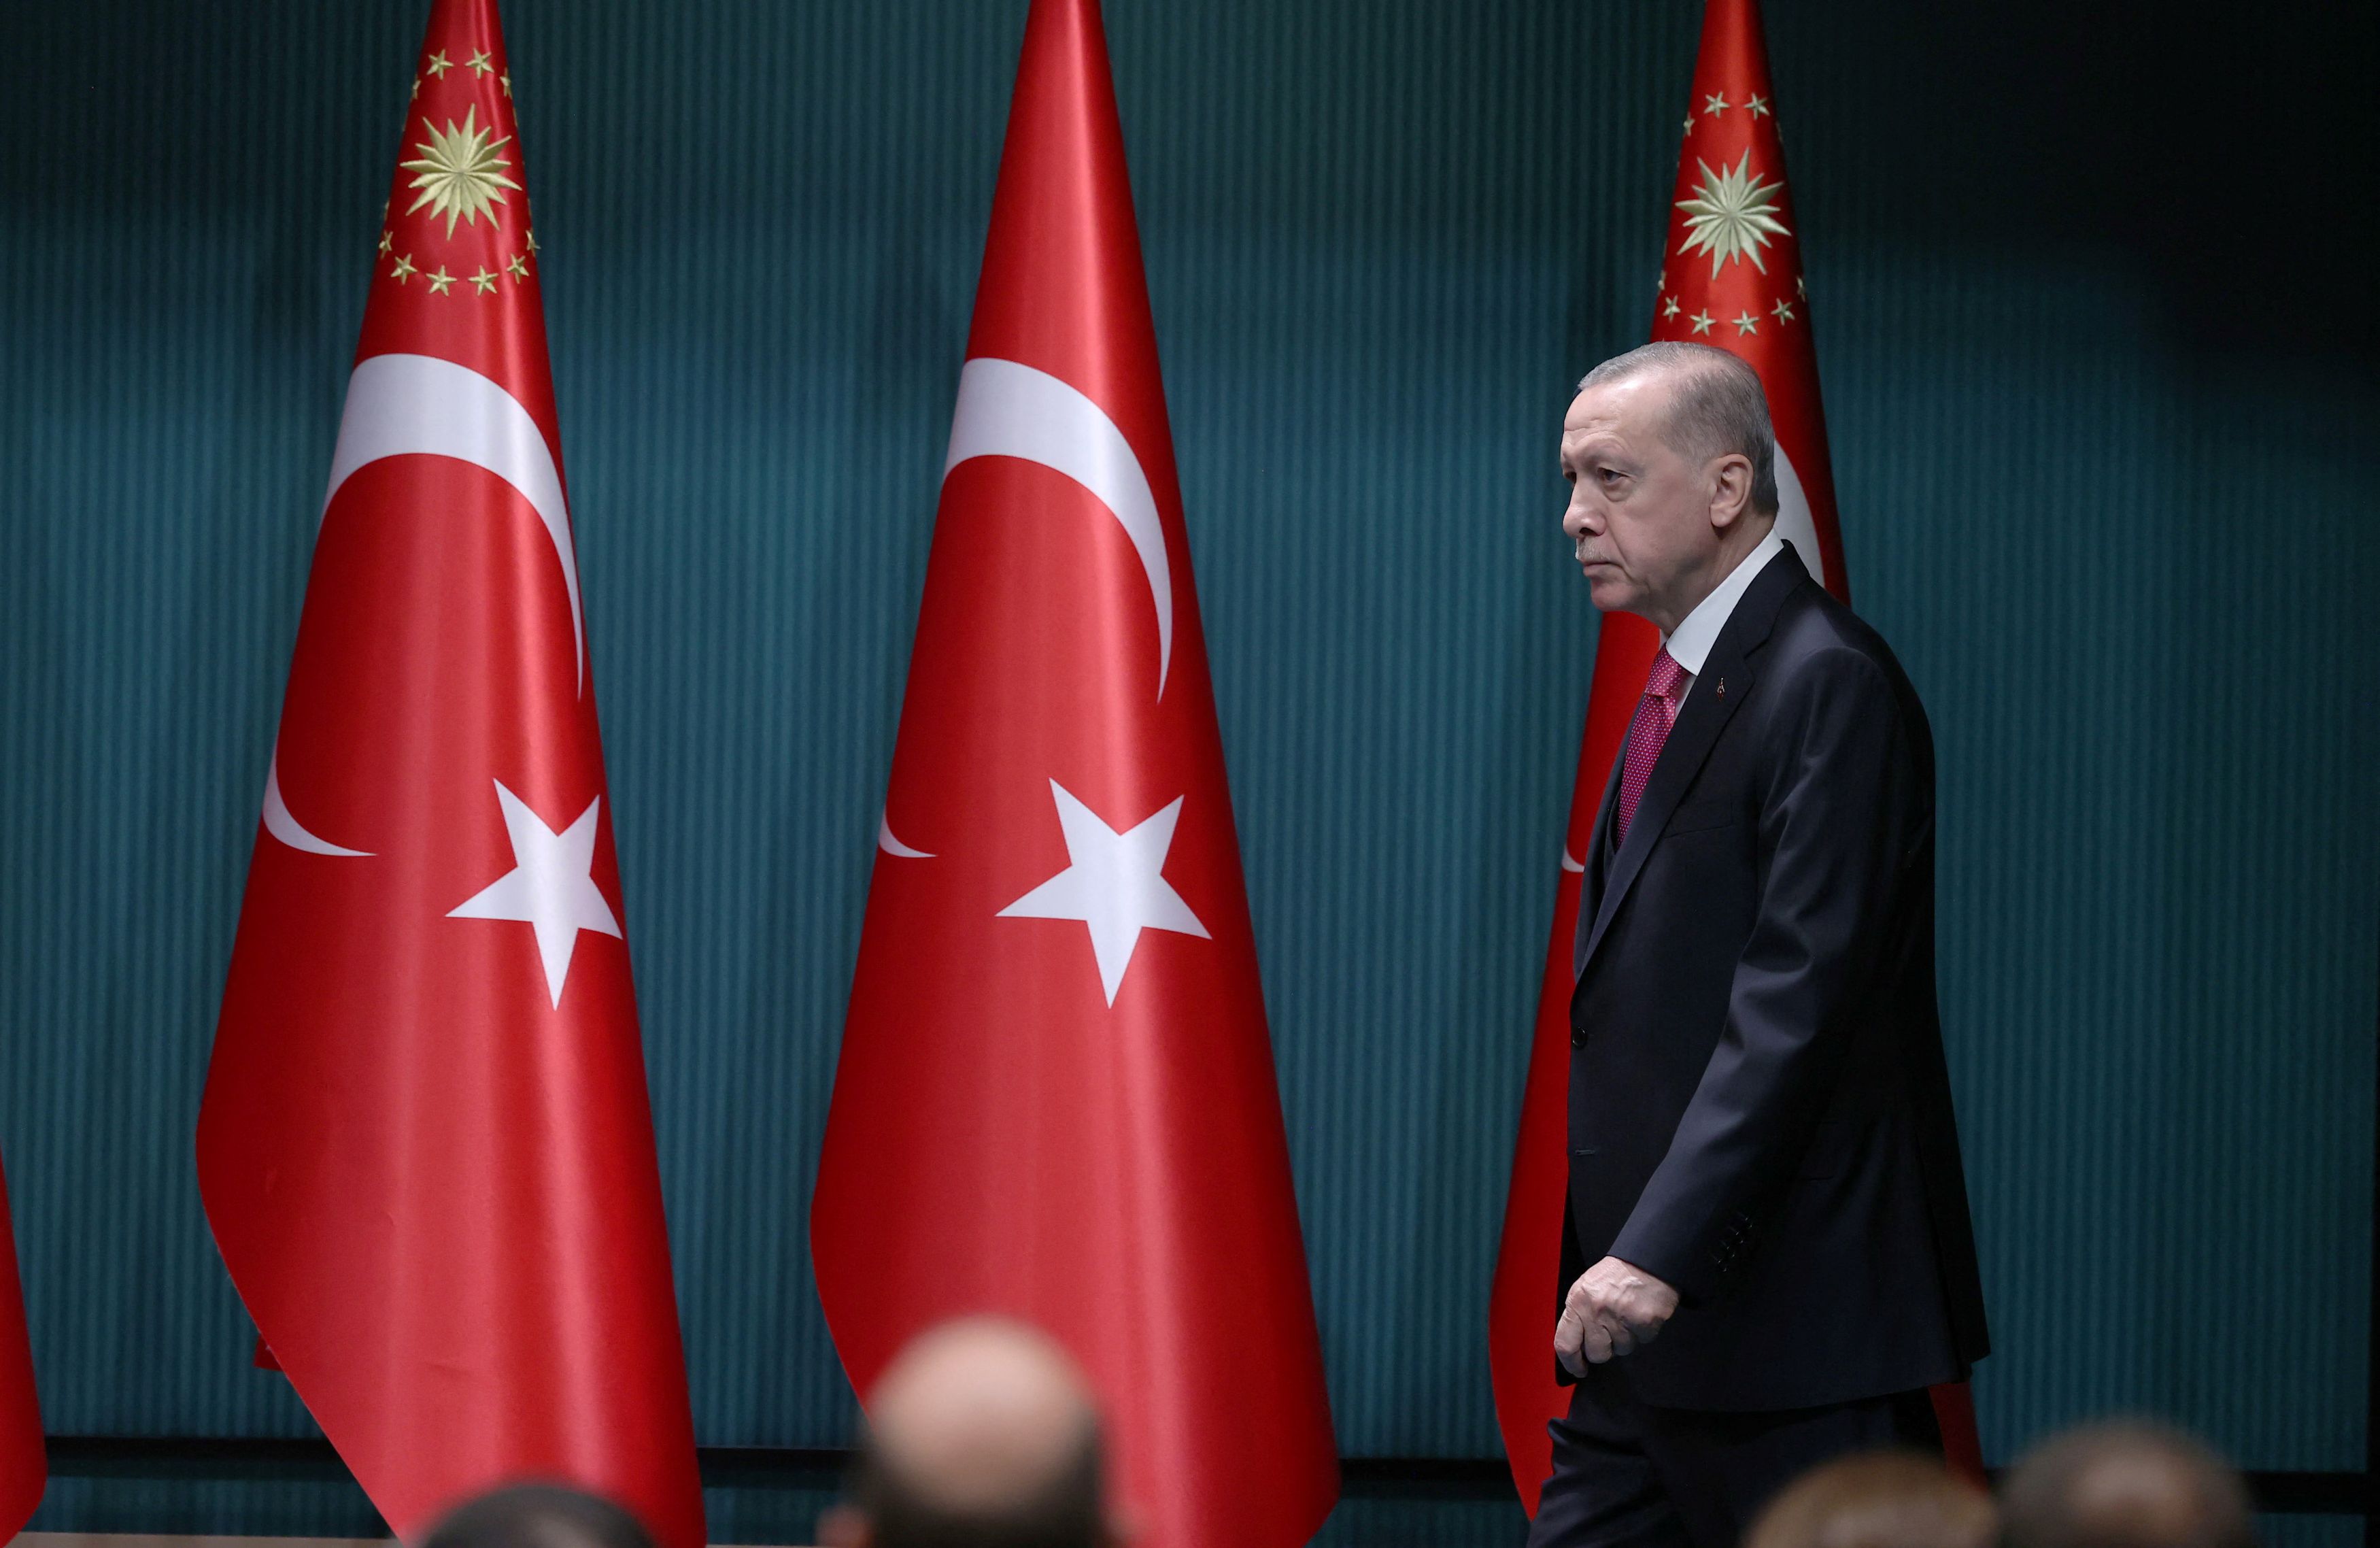 Ταγίπ Ερντογάν: Σταθερά δεύτερος ο Τούρκος πρόεδρος